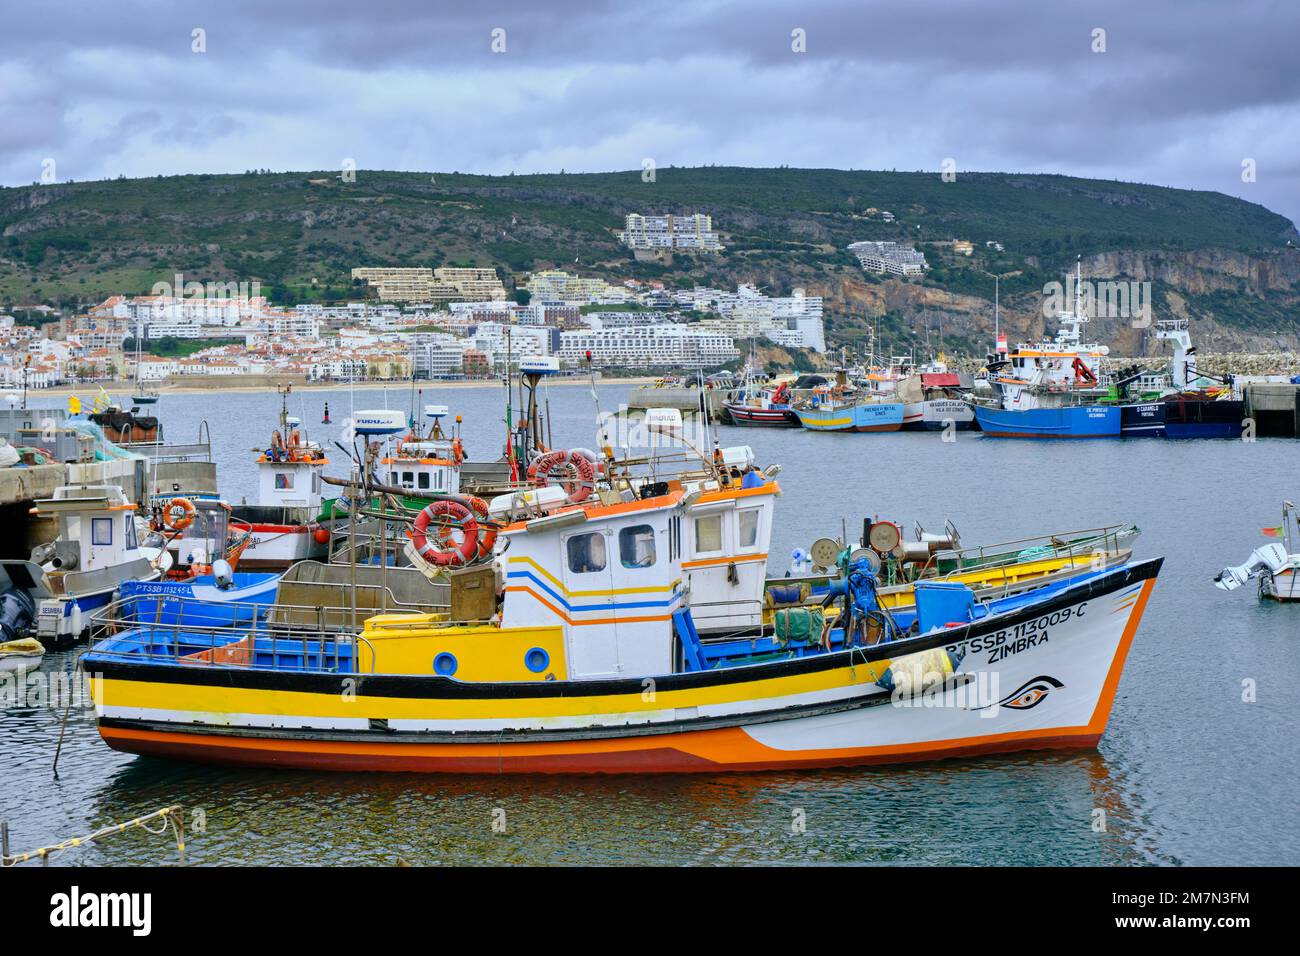 Bateaux de pêche colorés au port de pêche de Sesimbra. Portugal Banque D'Images